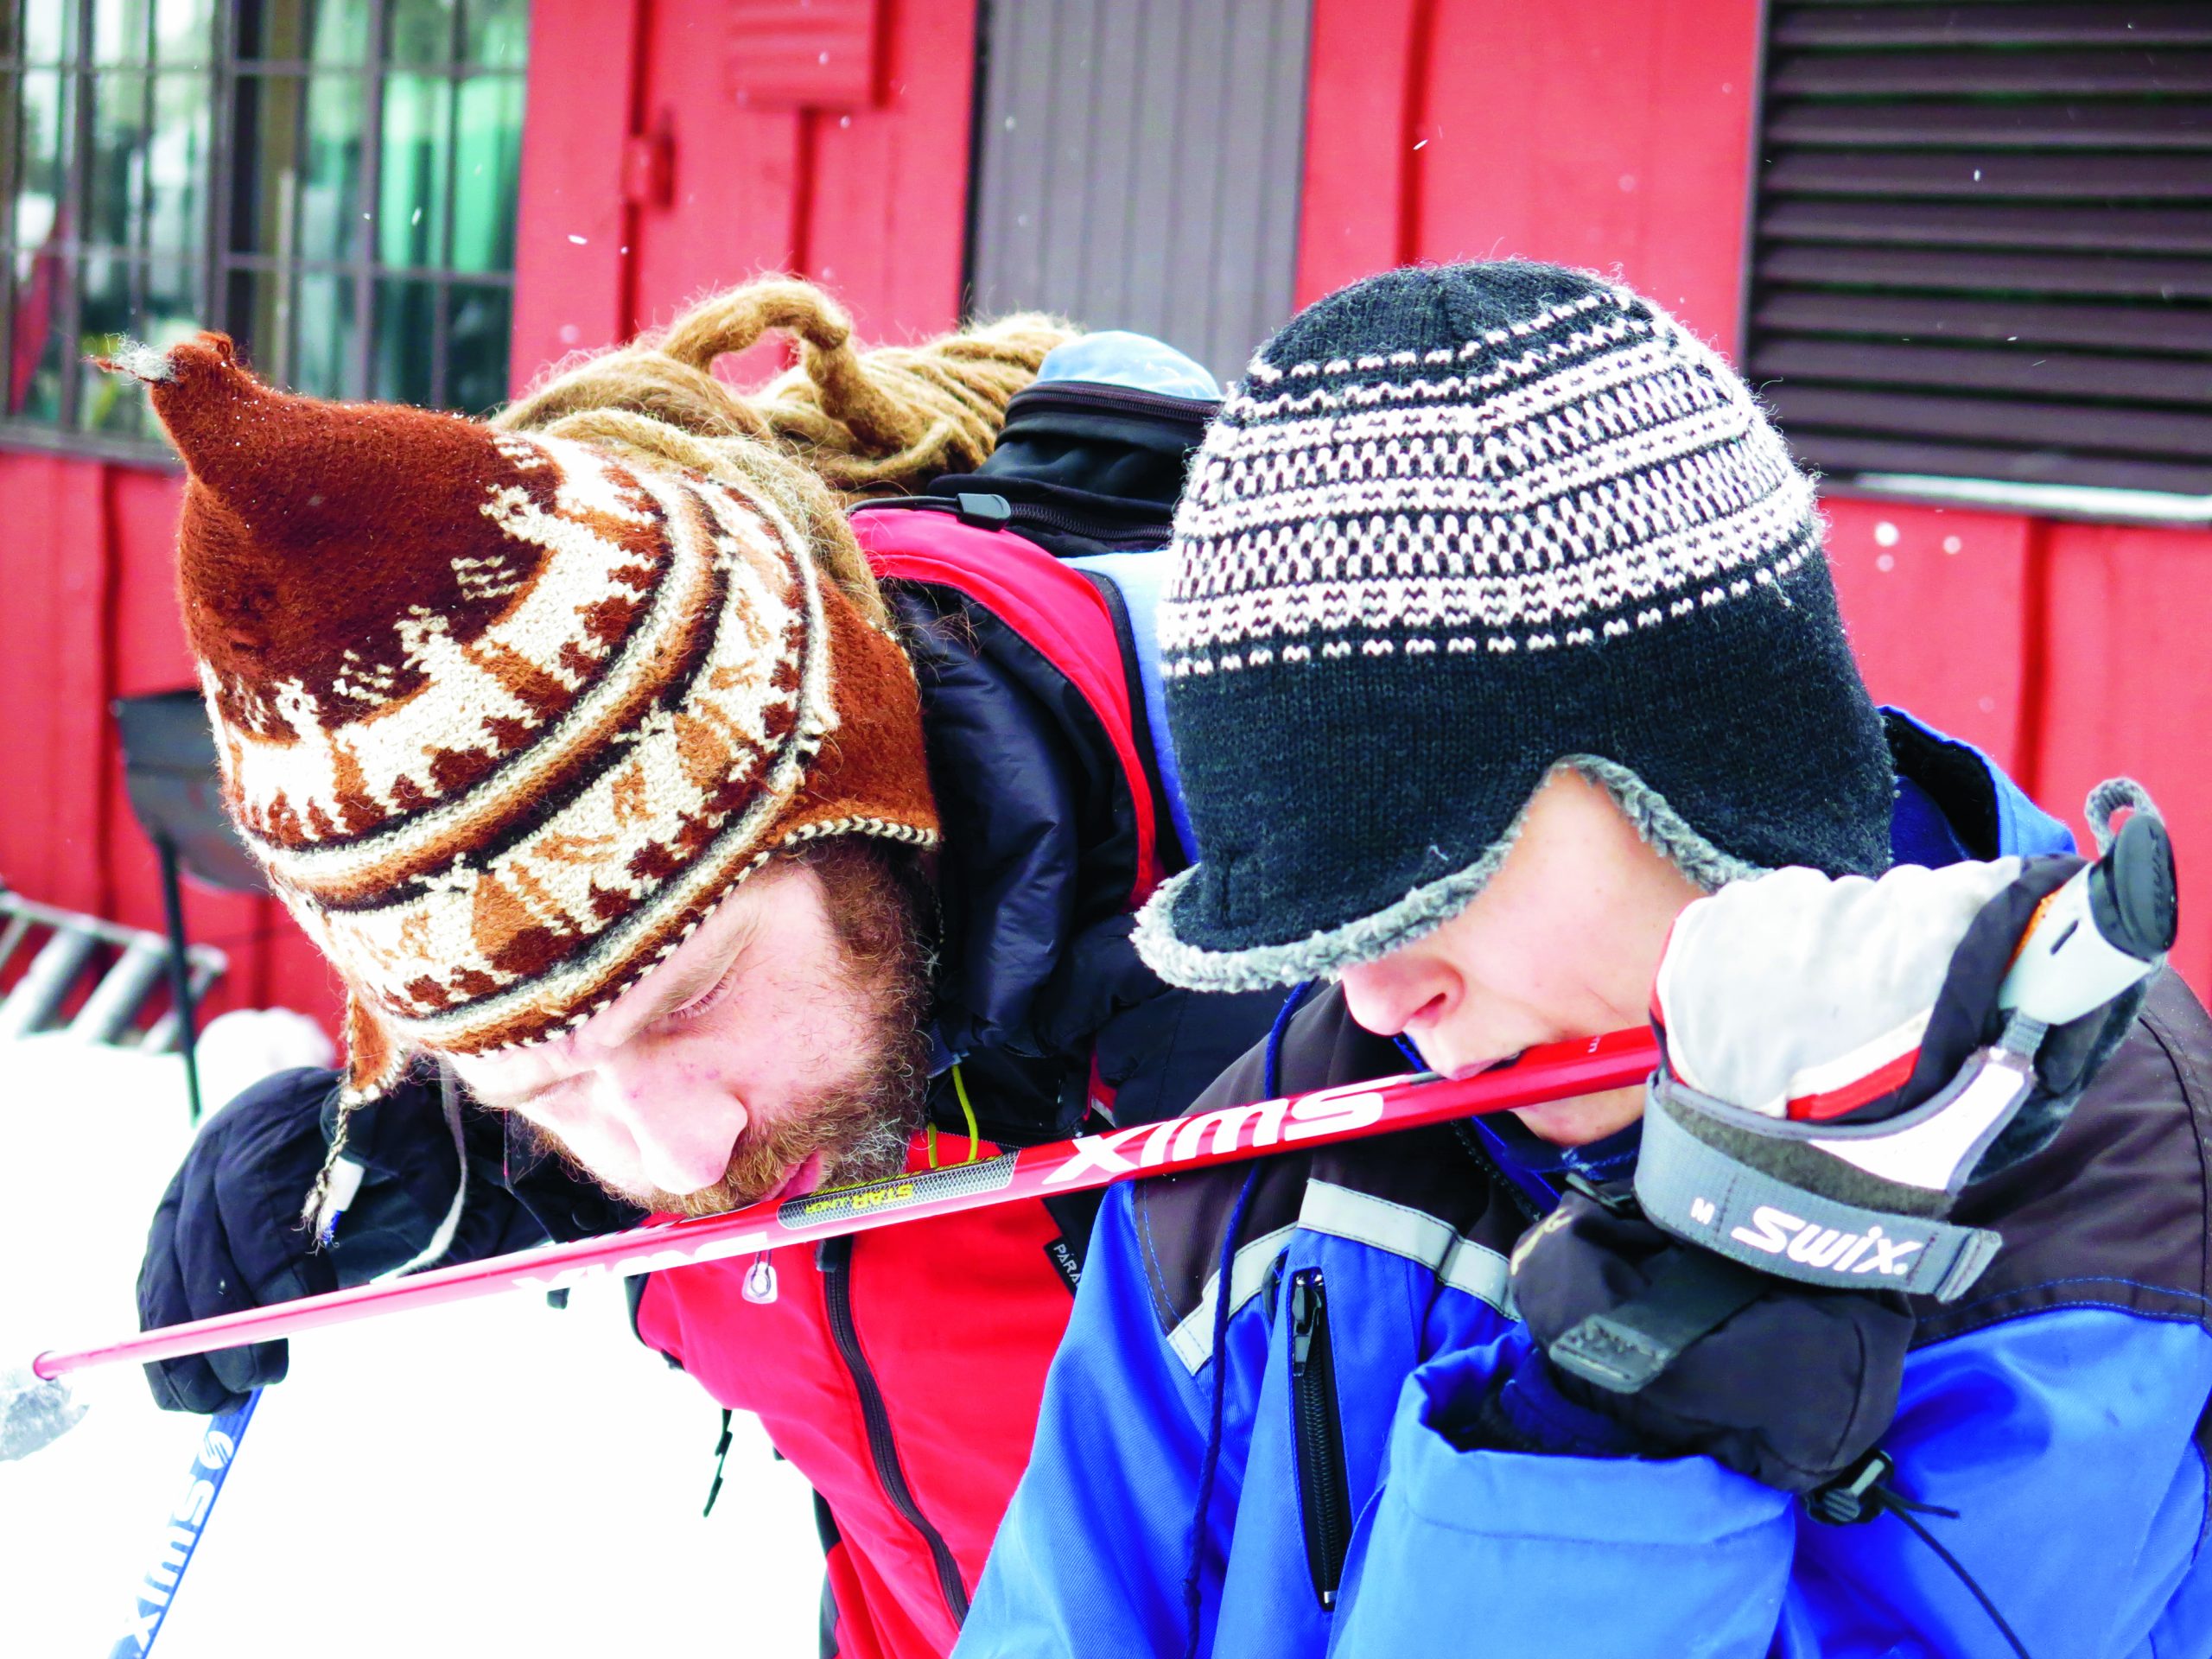 Joe Gibson and a boy tactily explore a skiing pole. 